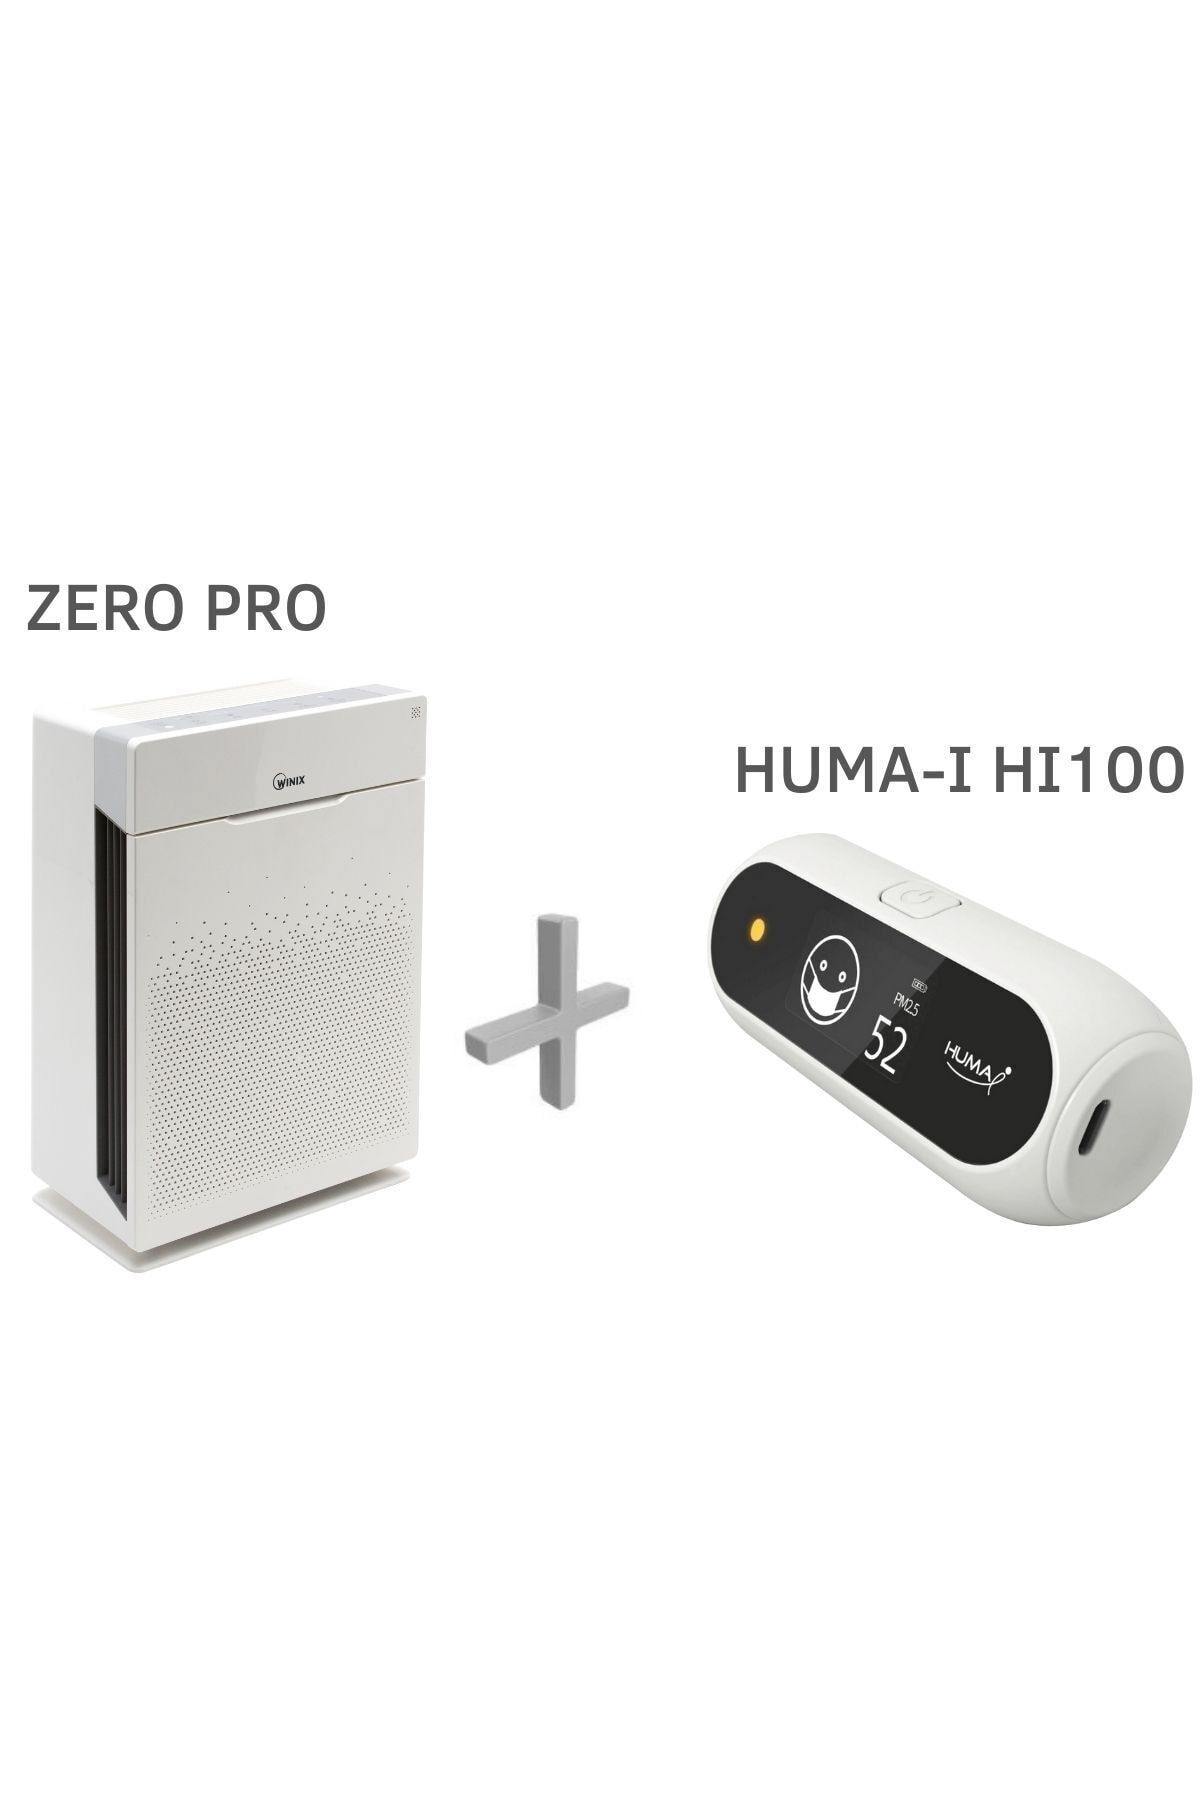 Winix Zero Pro Hava Temizleyici ve Huma-i HI100 Hava Kalitesi Ölçüm Cihazı Paketi